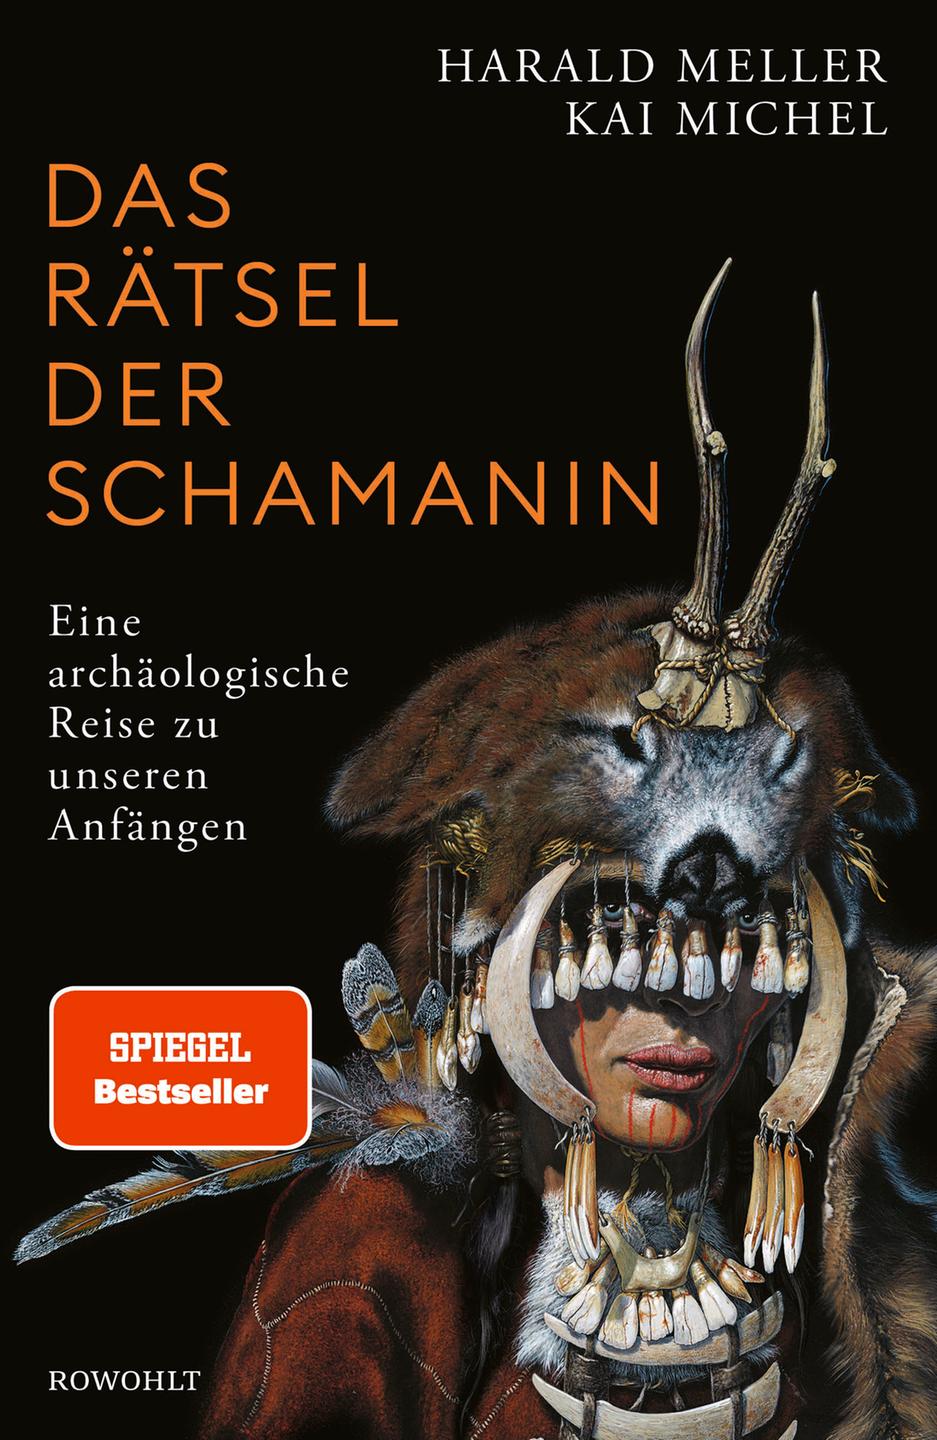 Cover des Buches "Das Rätsel der Schamanin" von Harald Meller und Kai Michel. Der Hintergrund ist schwarz, auf der rechten Seite ist eine Frau mit archaisch anmutender Tiermaske zu sehen. 